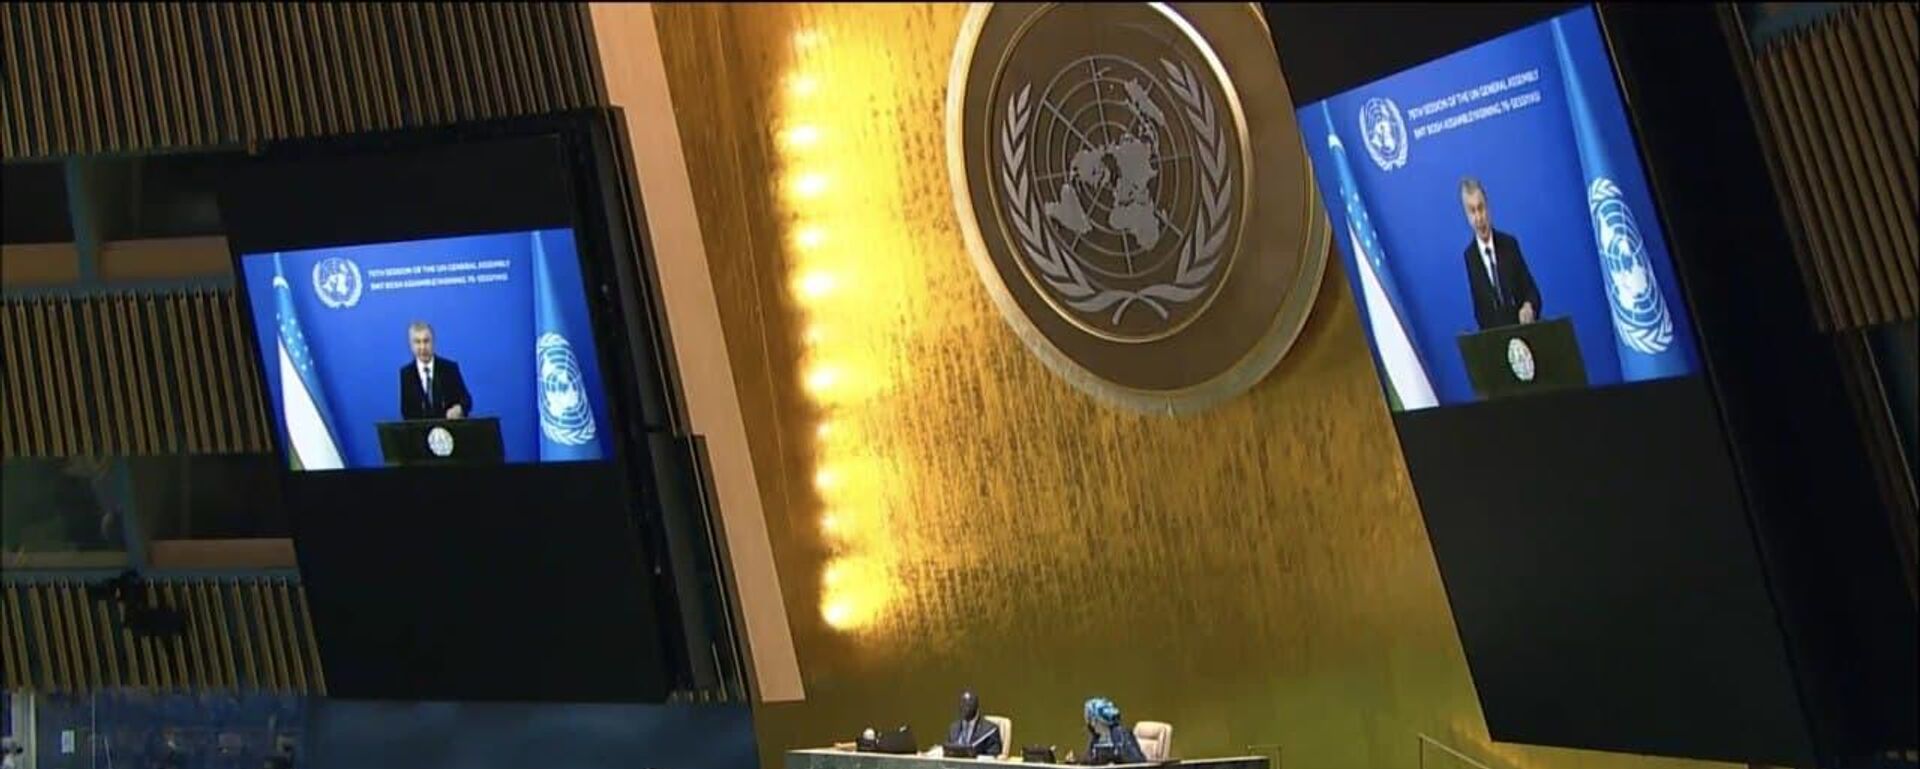 Шавкат Мирзиёев выступил с видеообращением на 76-й сессии Генеральной Ассамблеи ООН - Sputnik Узбекистан, 1920, 21.09.2021